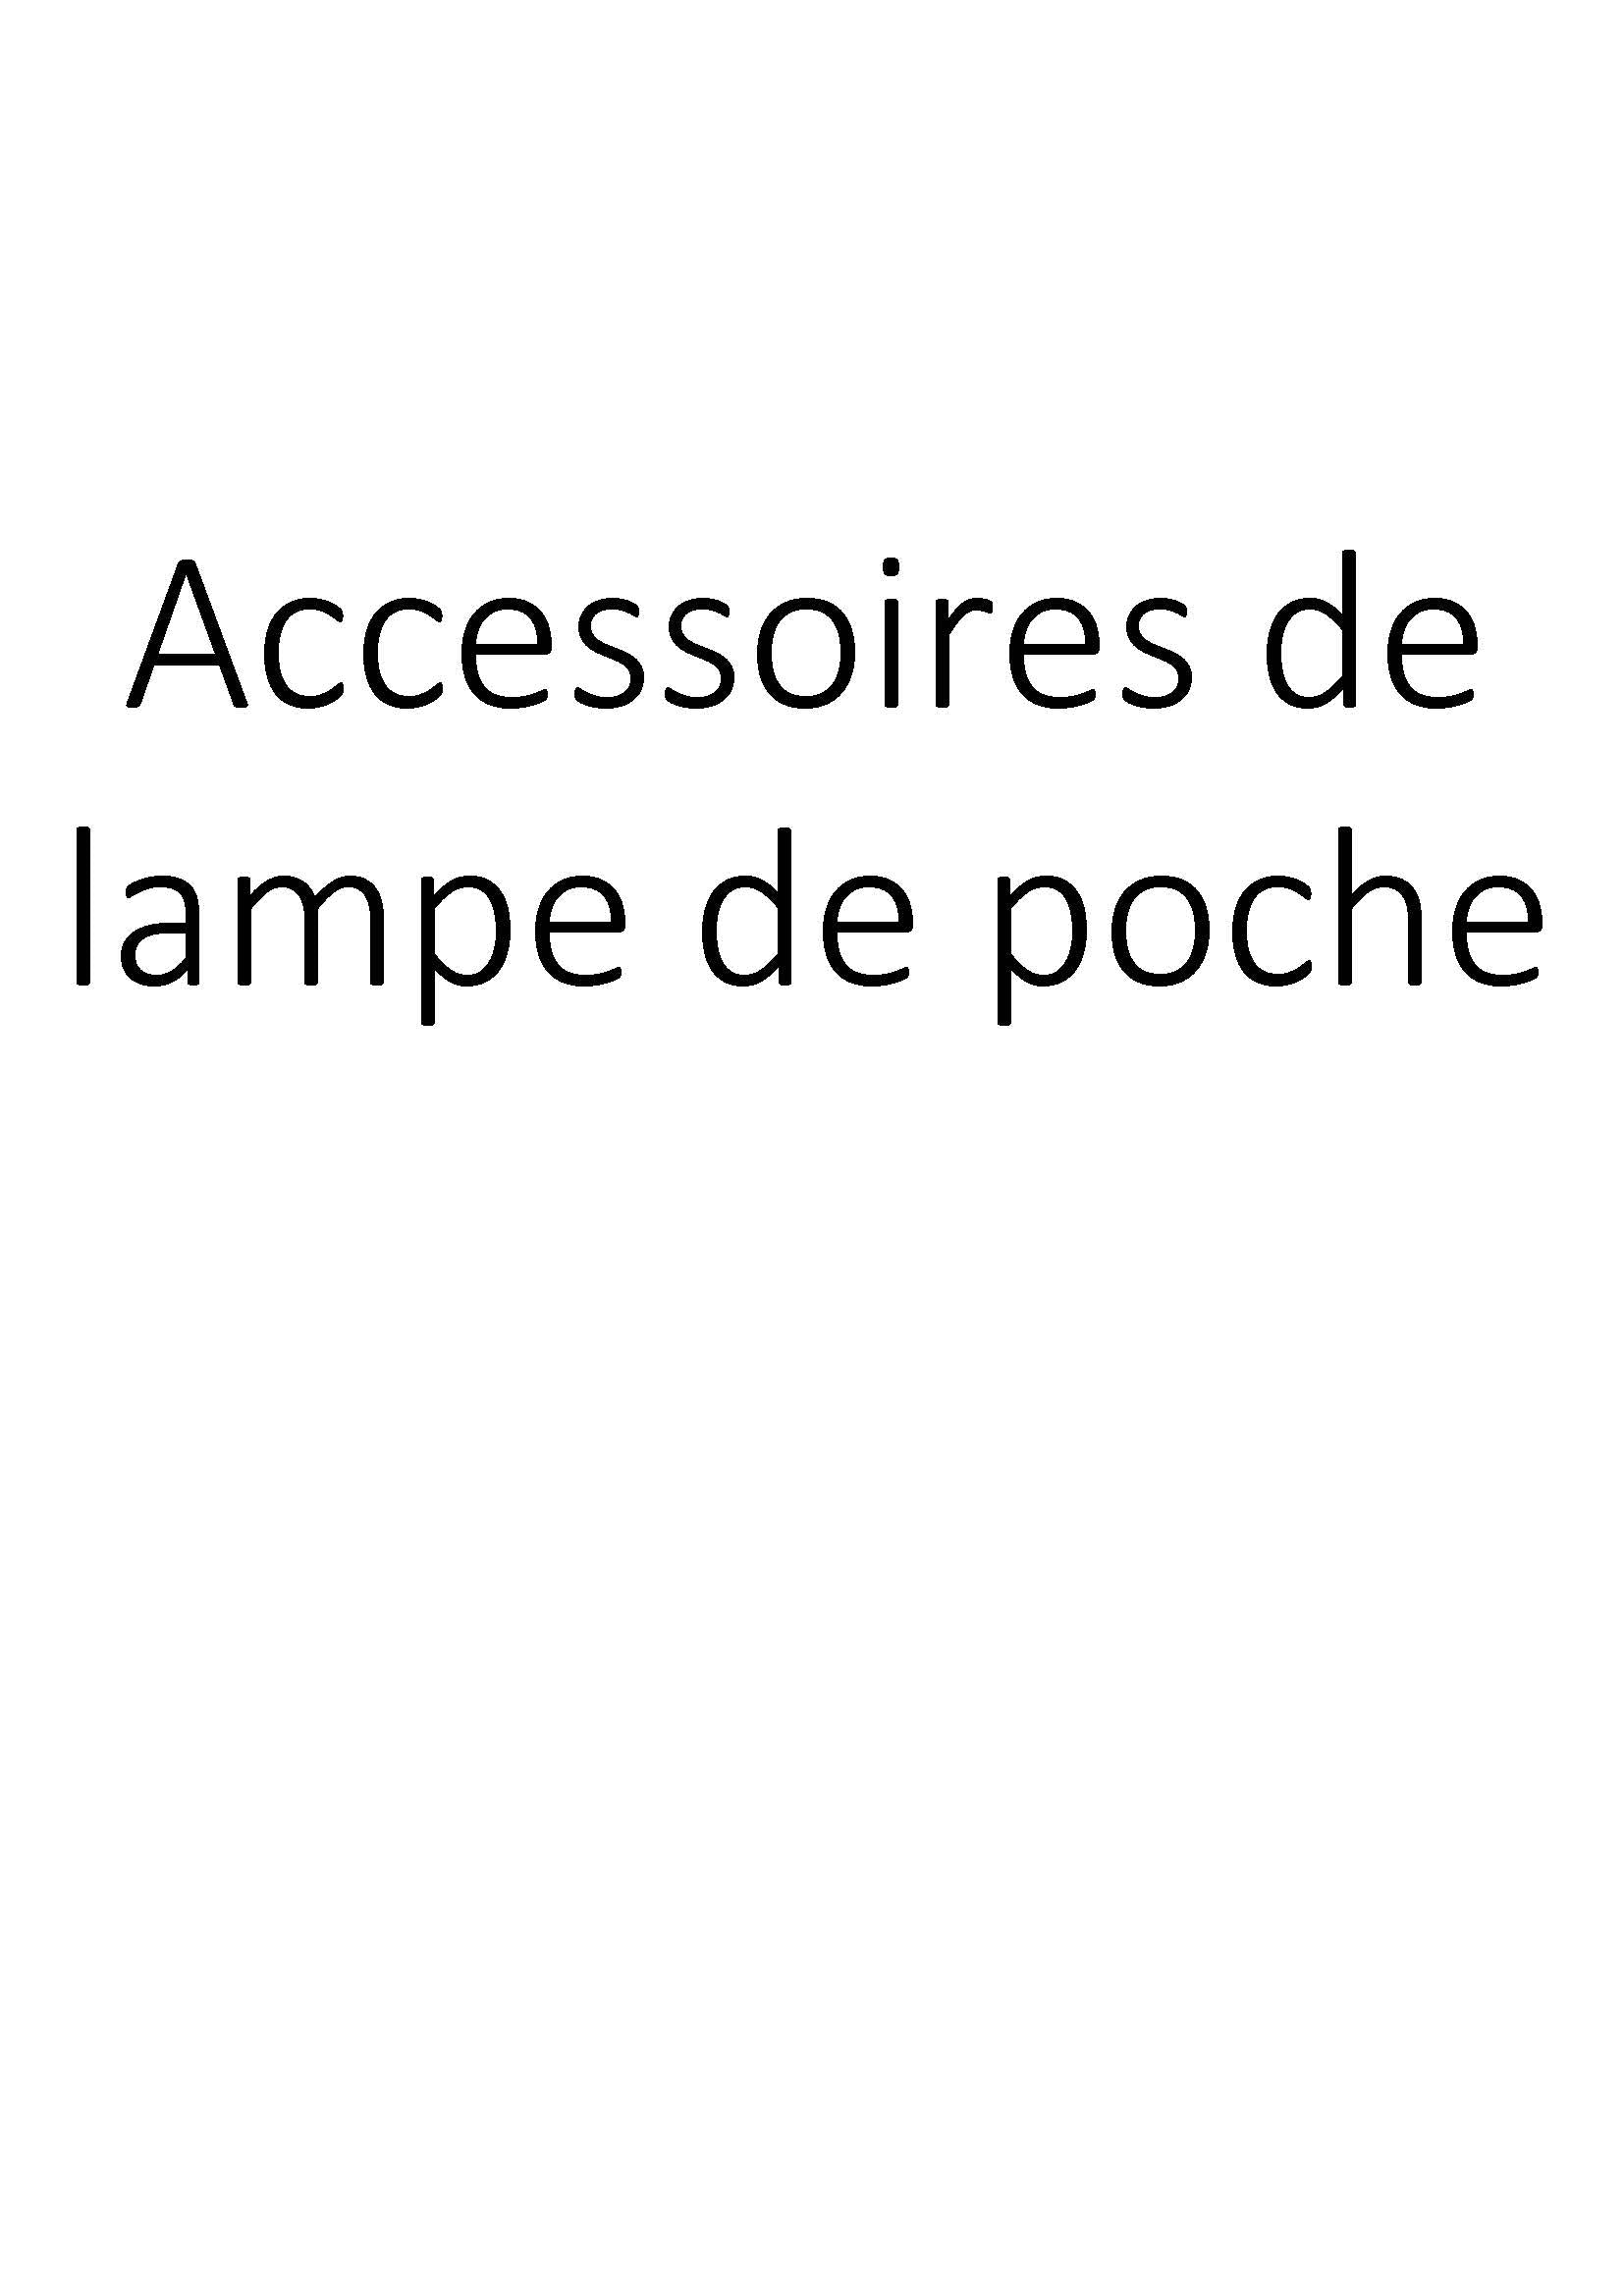 Accessoires de lampe de poche clicktofournisseur.com